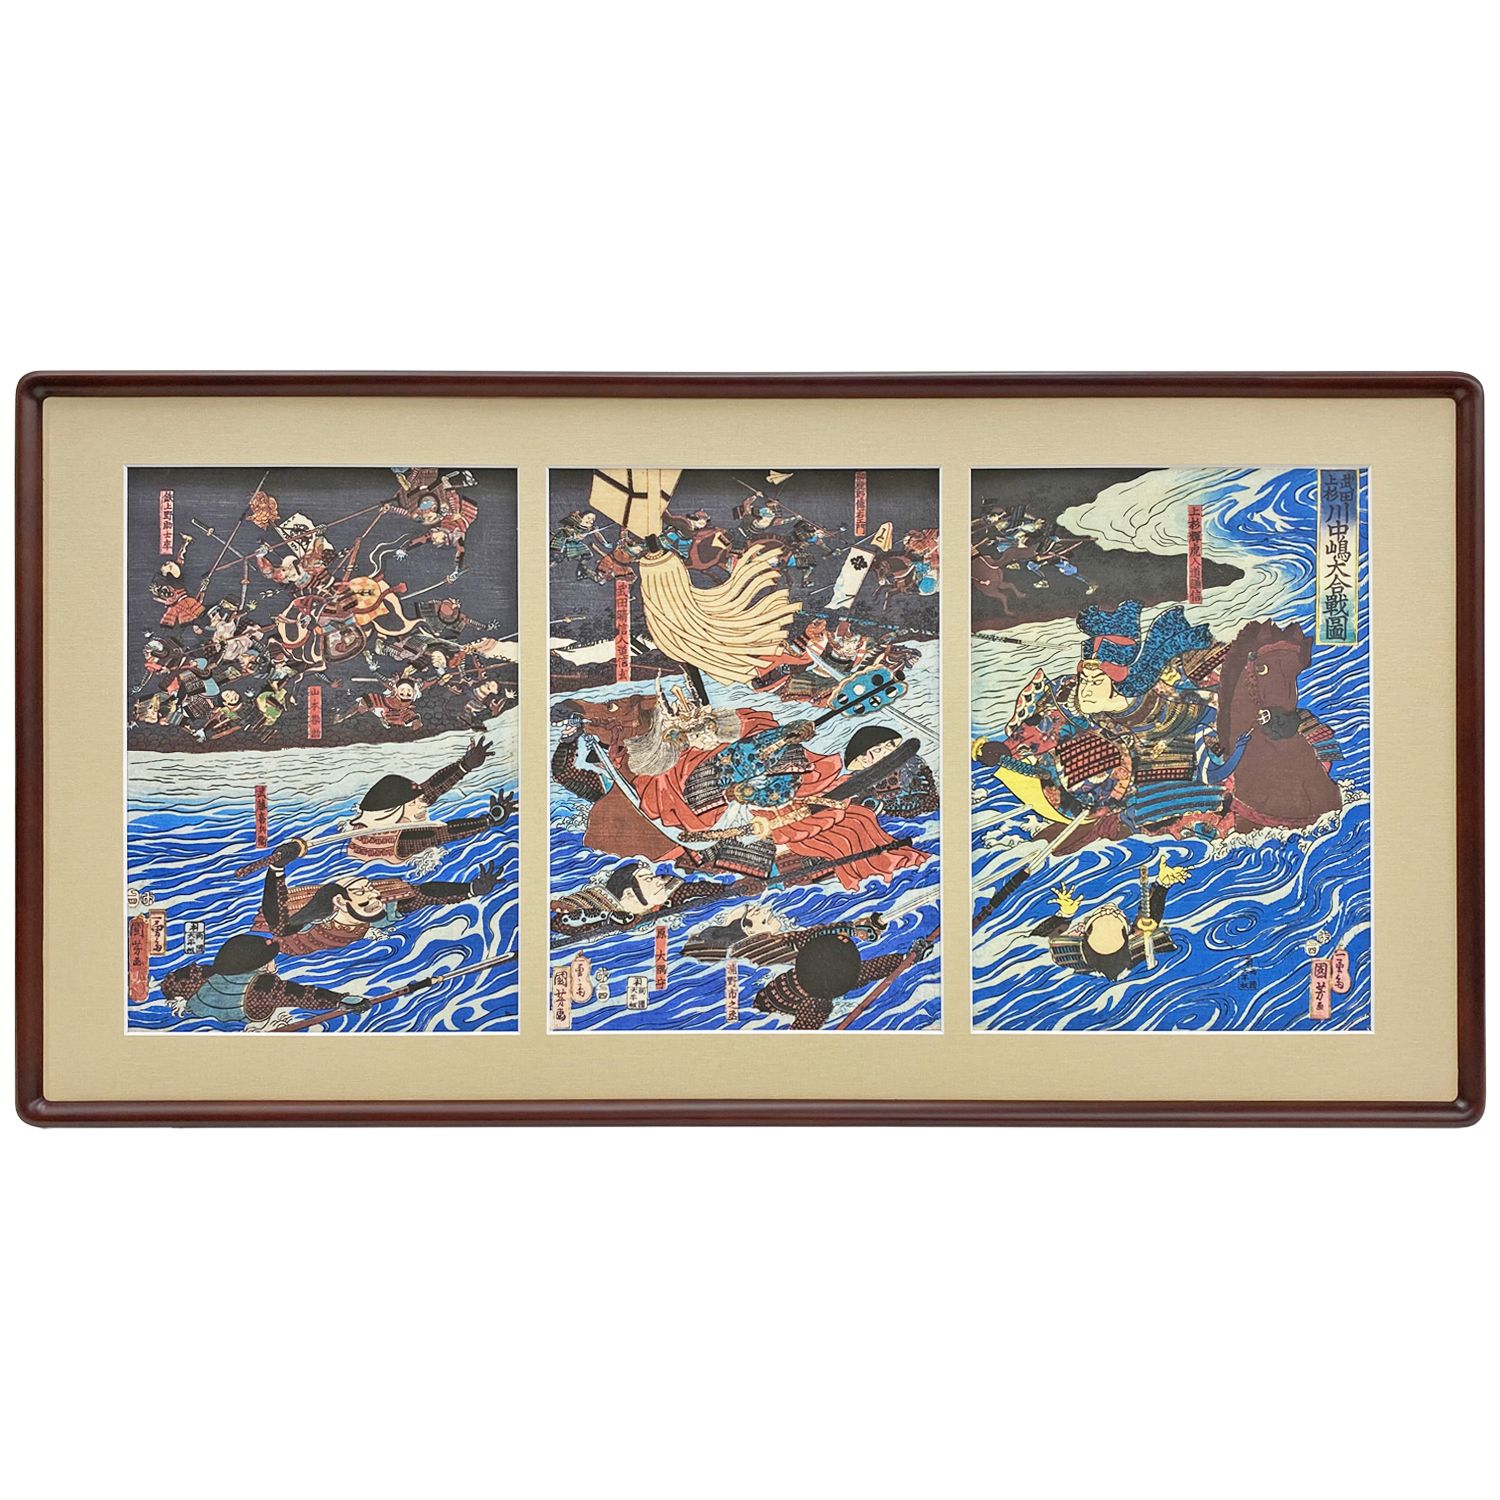 武田上杉川中嶋大合戦図 歌川国芳作の浮世絵複製画、川の中で斬り結ぶ